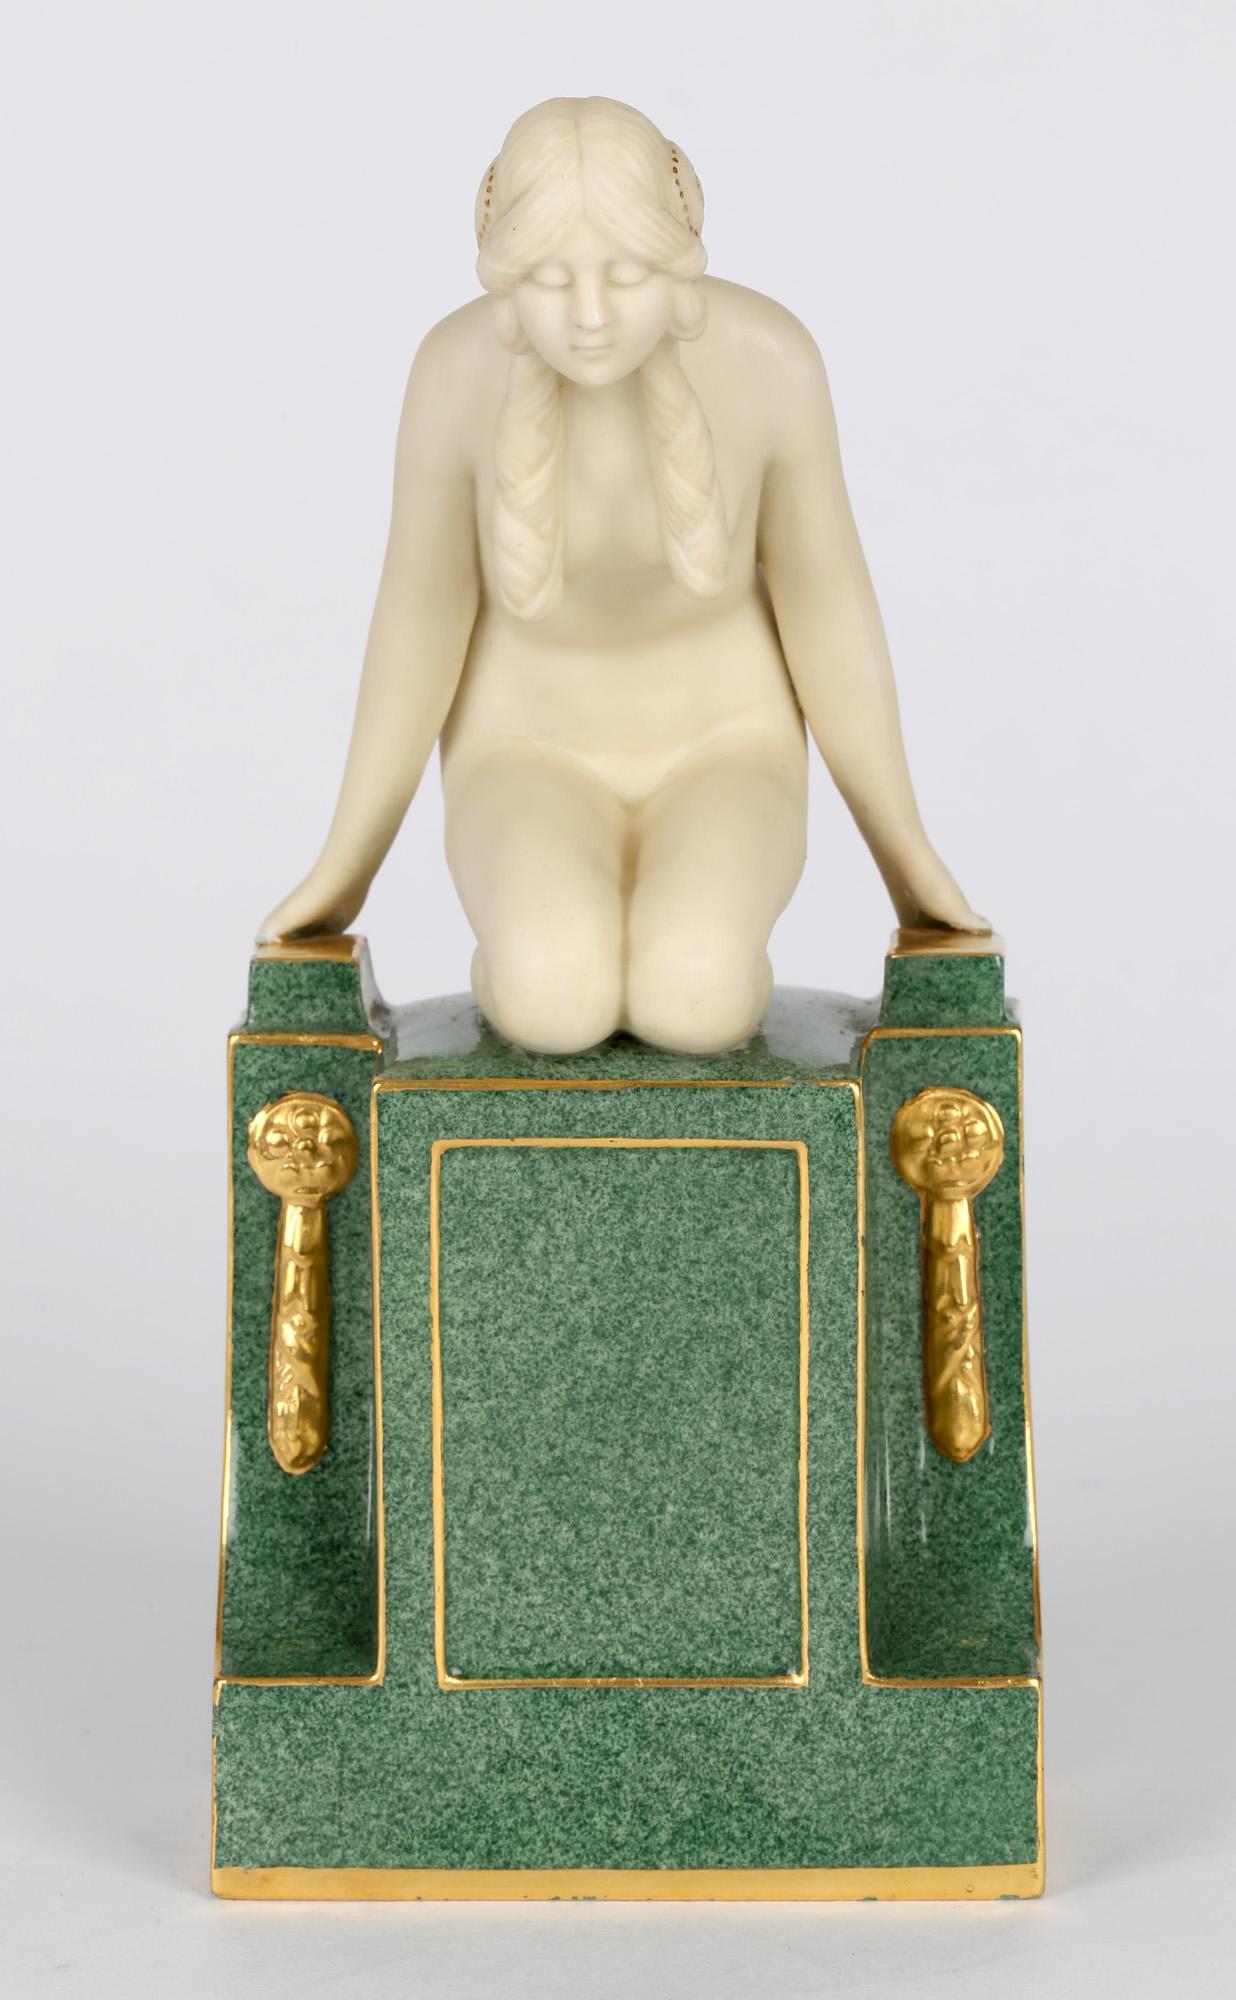 Frederick Gertner Royal Worcester Art Deco Porcelain Sculptural Naiad Figurine 3